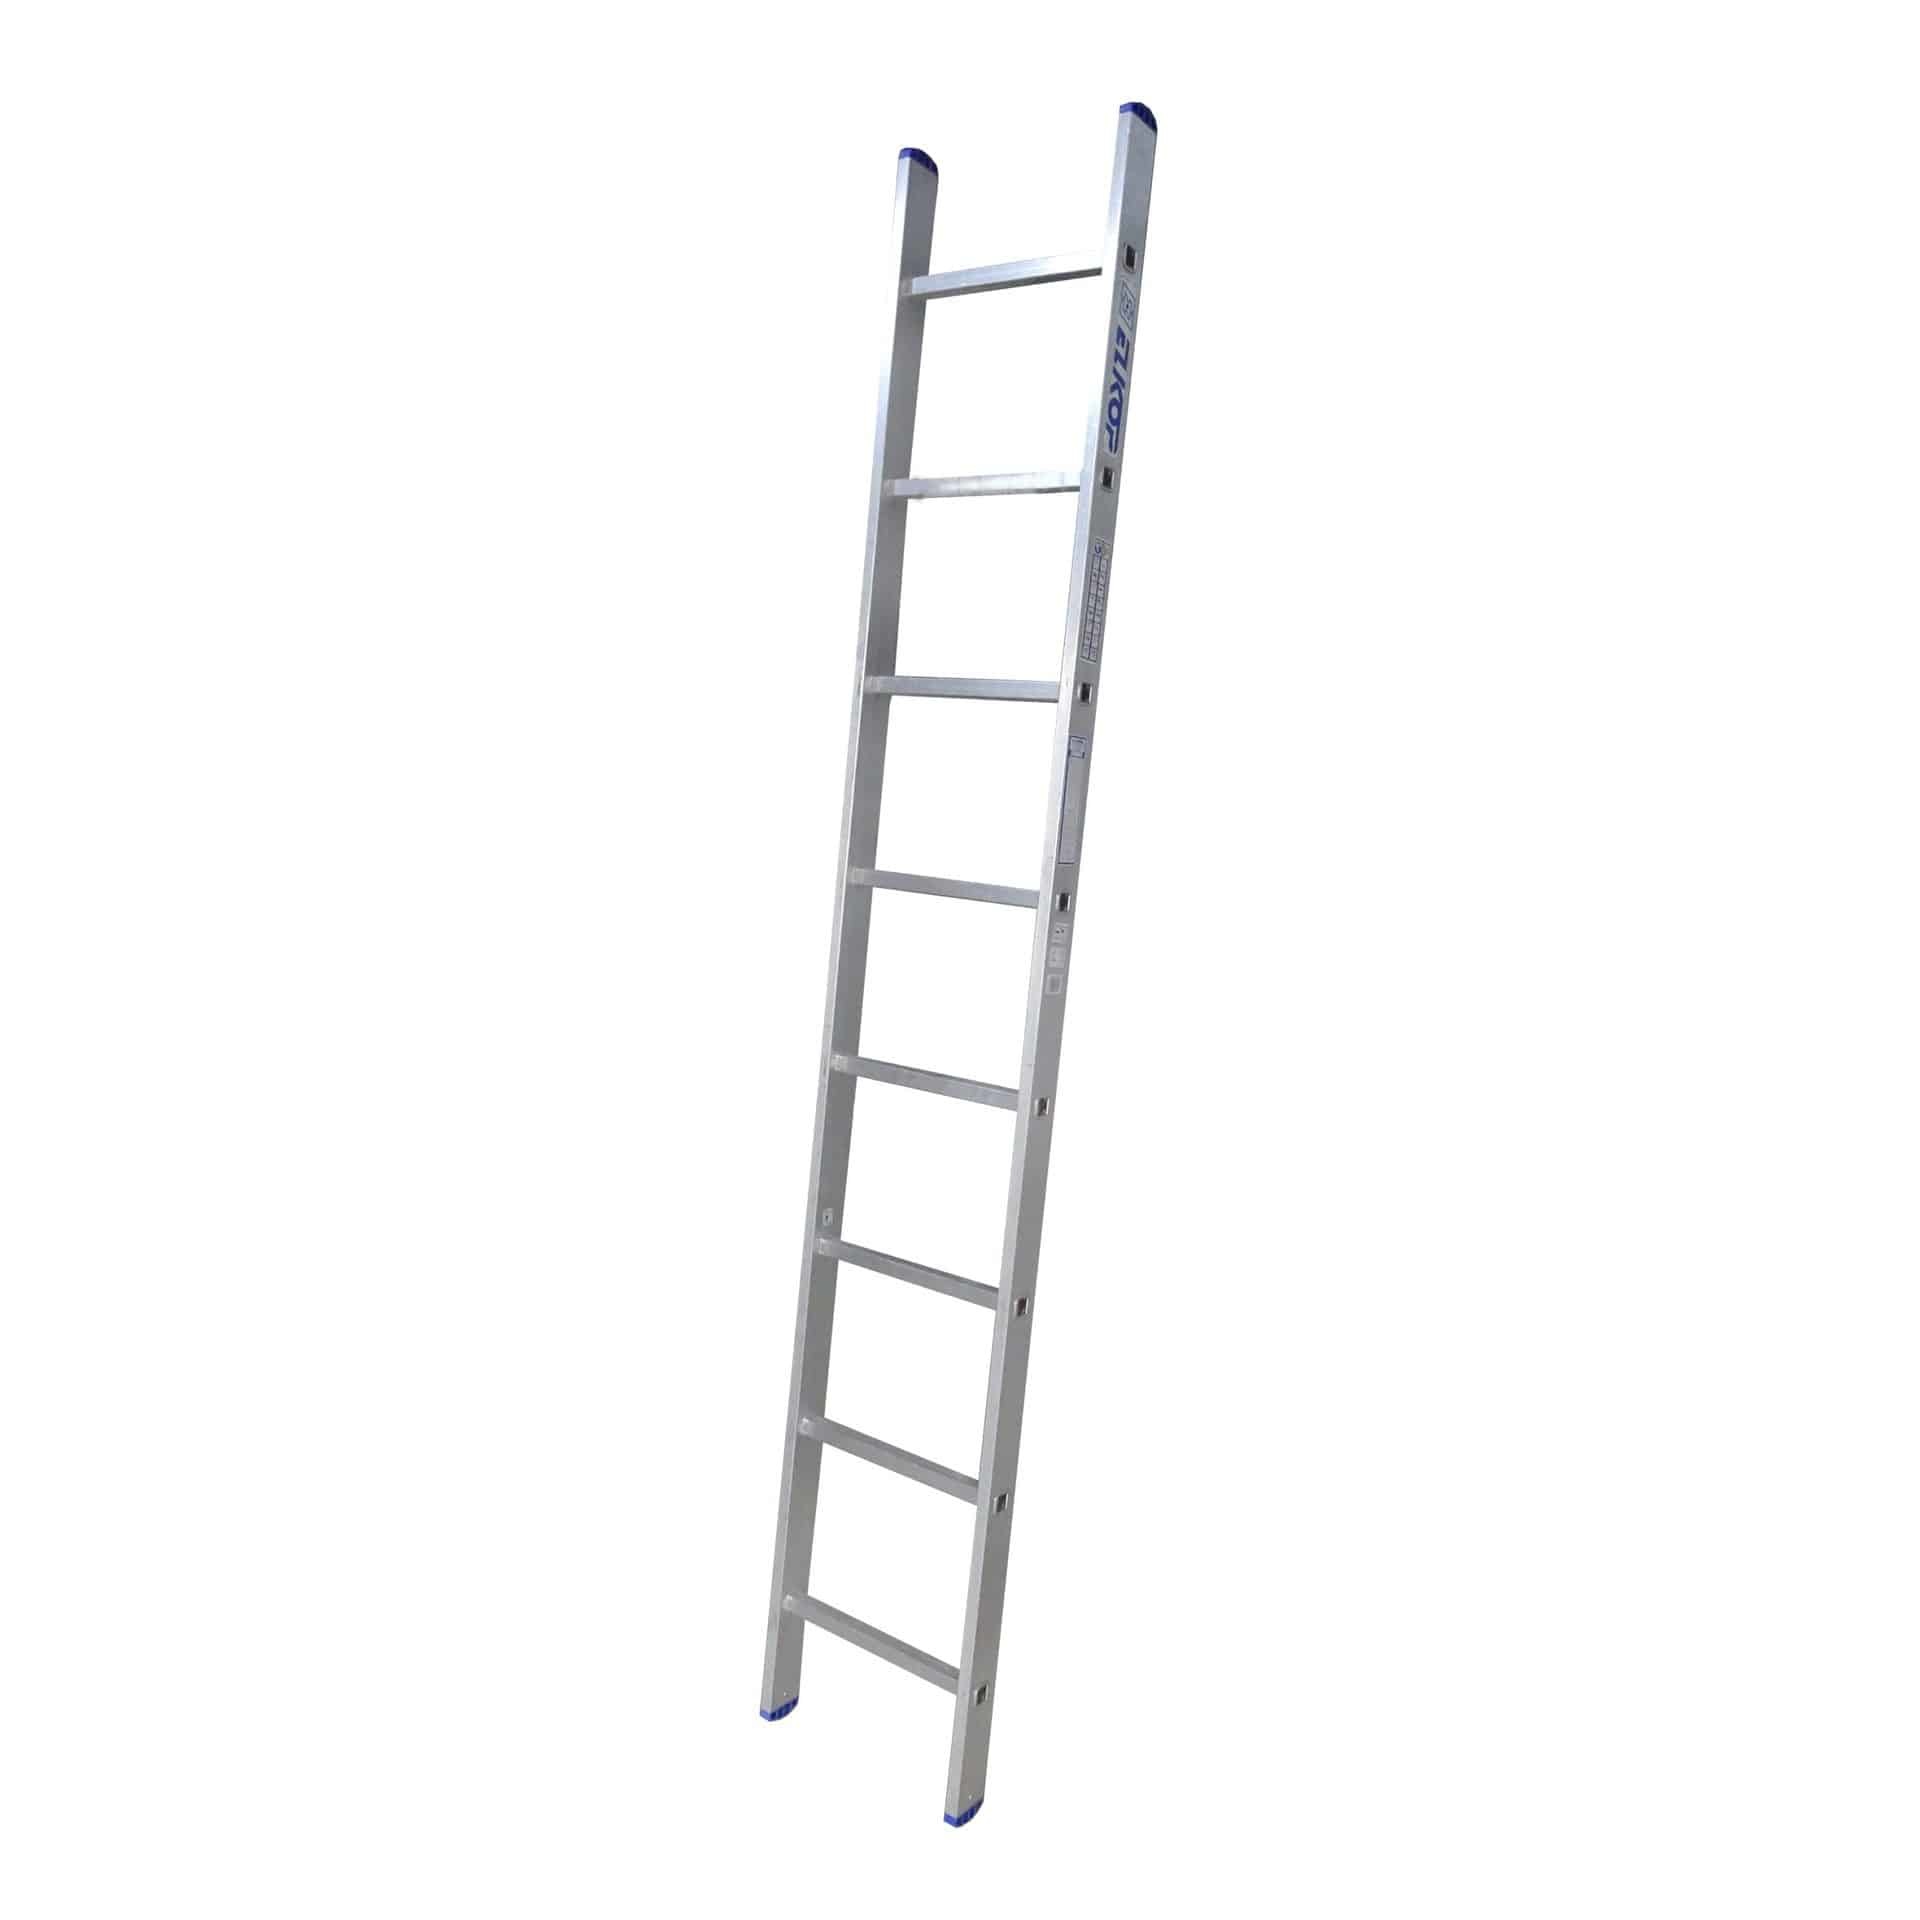 besteden plak Bijlage ALX enkele ladder 8 treden - ALX enkele ladder 8 treden kopen? -  Rolsteiger-kopen.be.